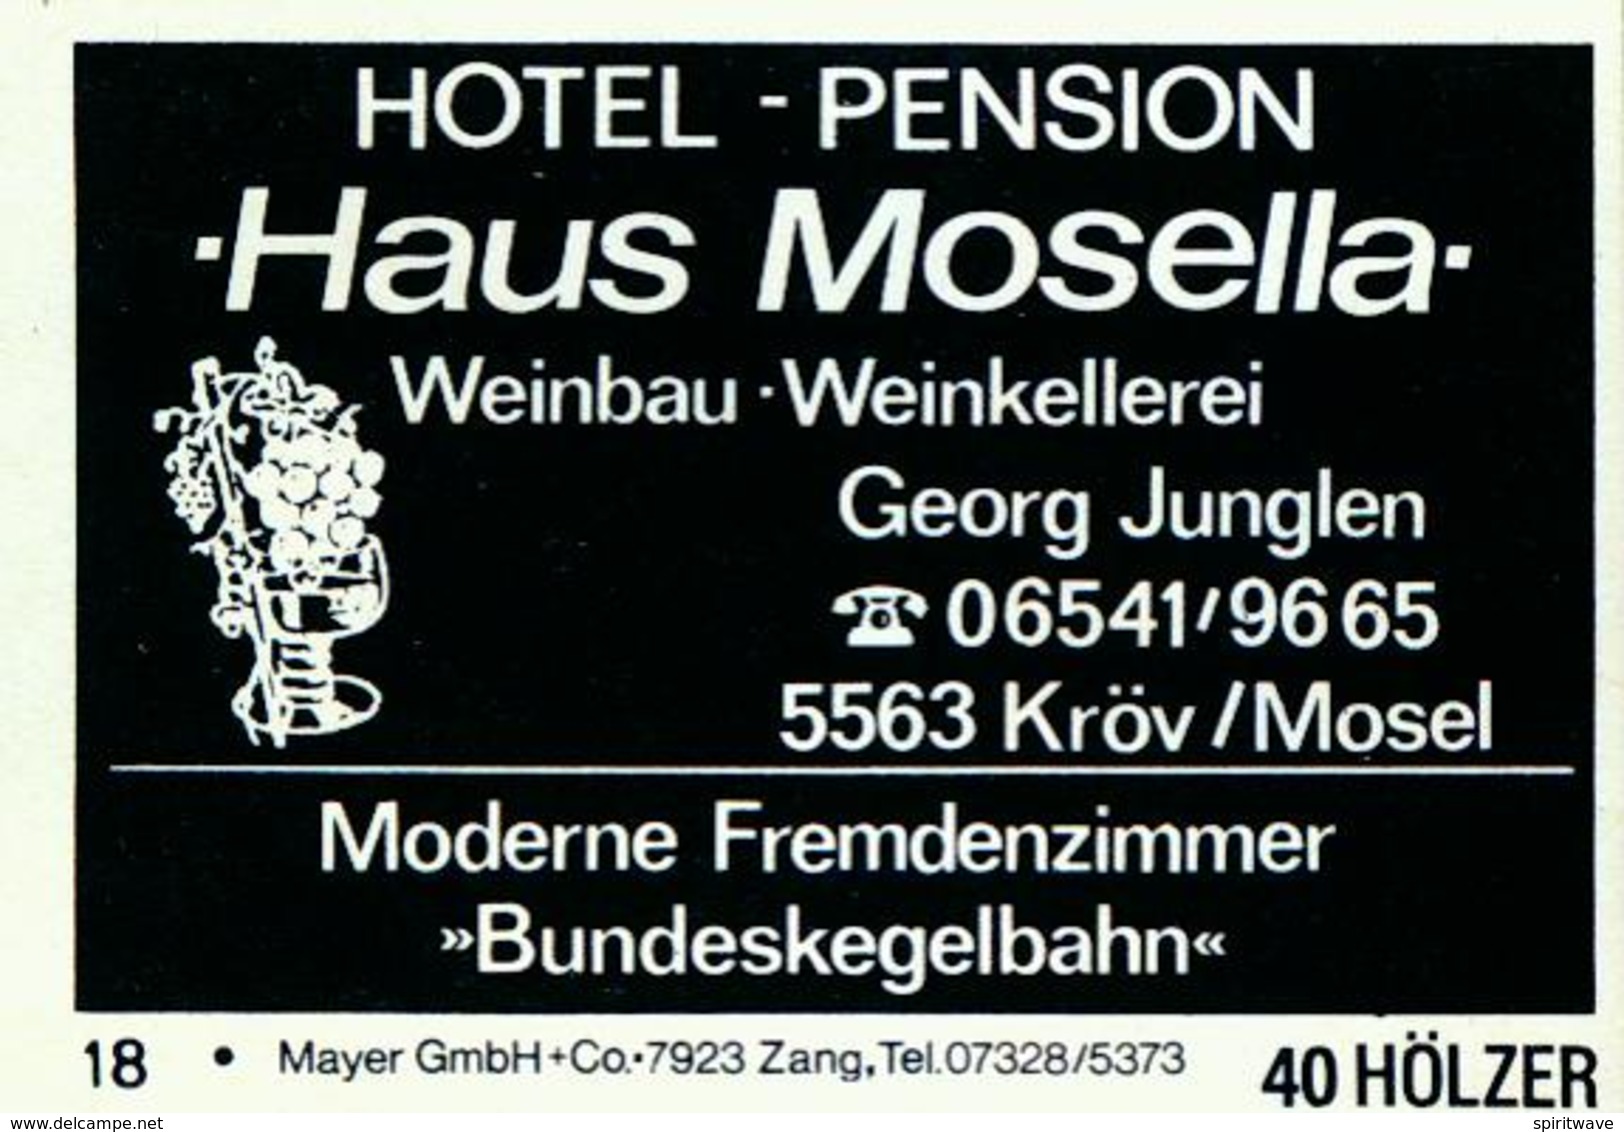 20 Alte Gasthausetiketten, Haus Mosella Hotel – Pension Weinbau Weinkellerei, Georg Junglen, 5563 Kröv/Mosel #207 - Zündholzschachteletiketten